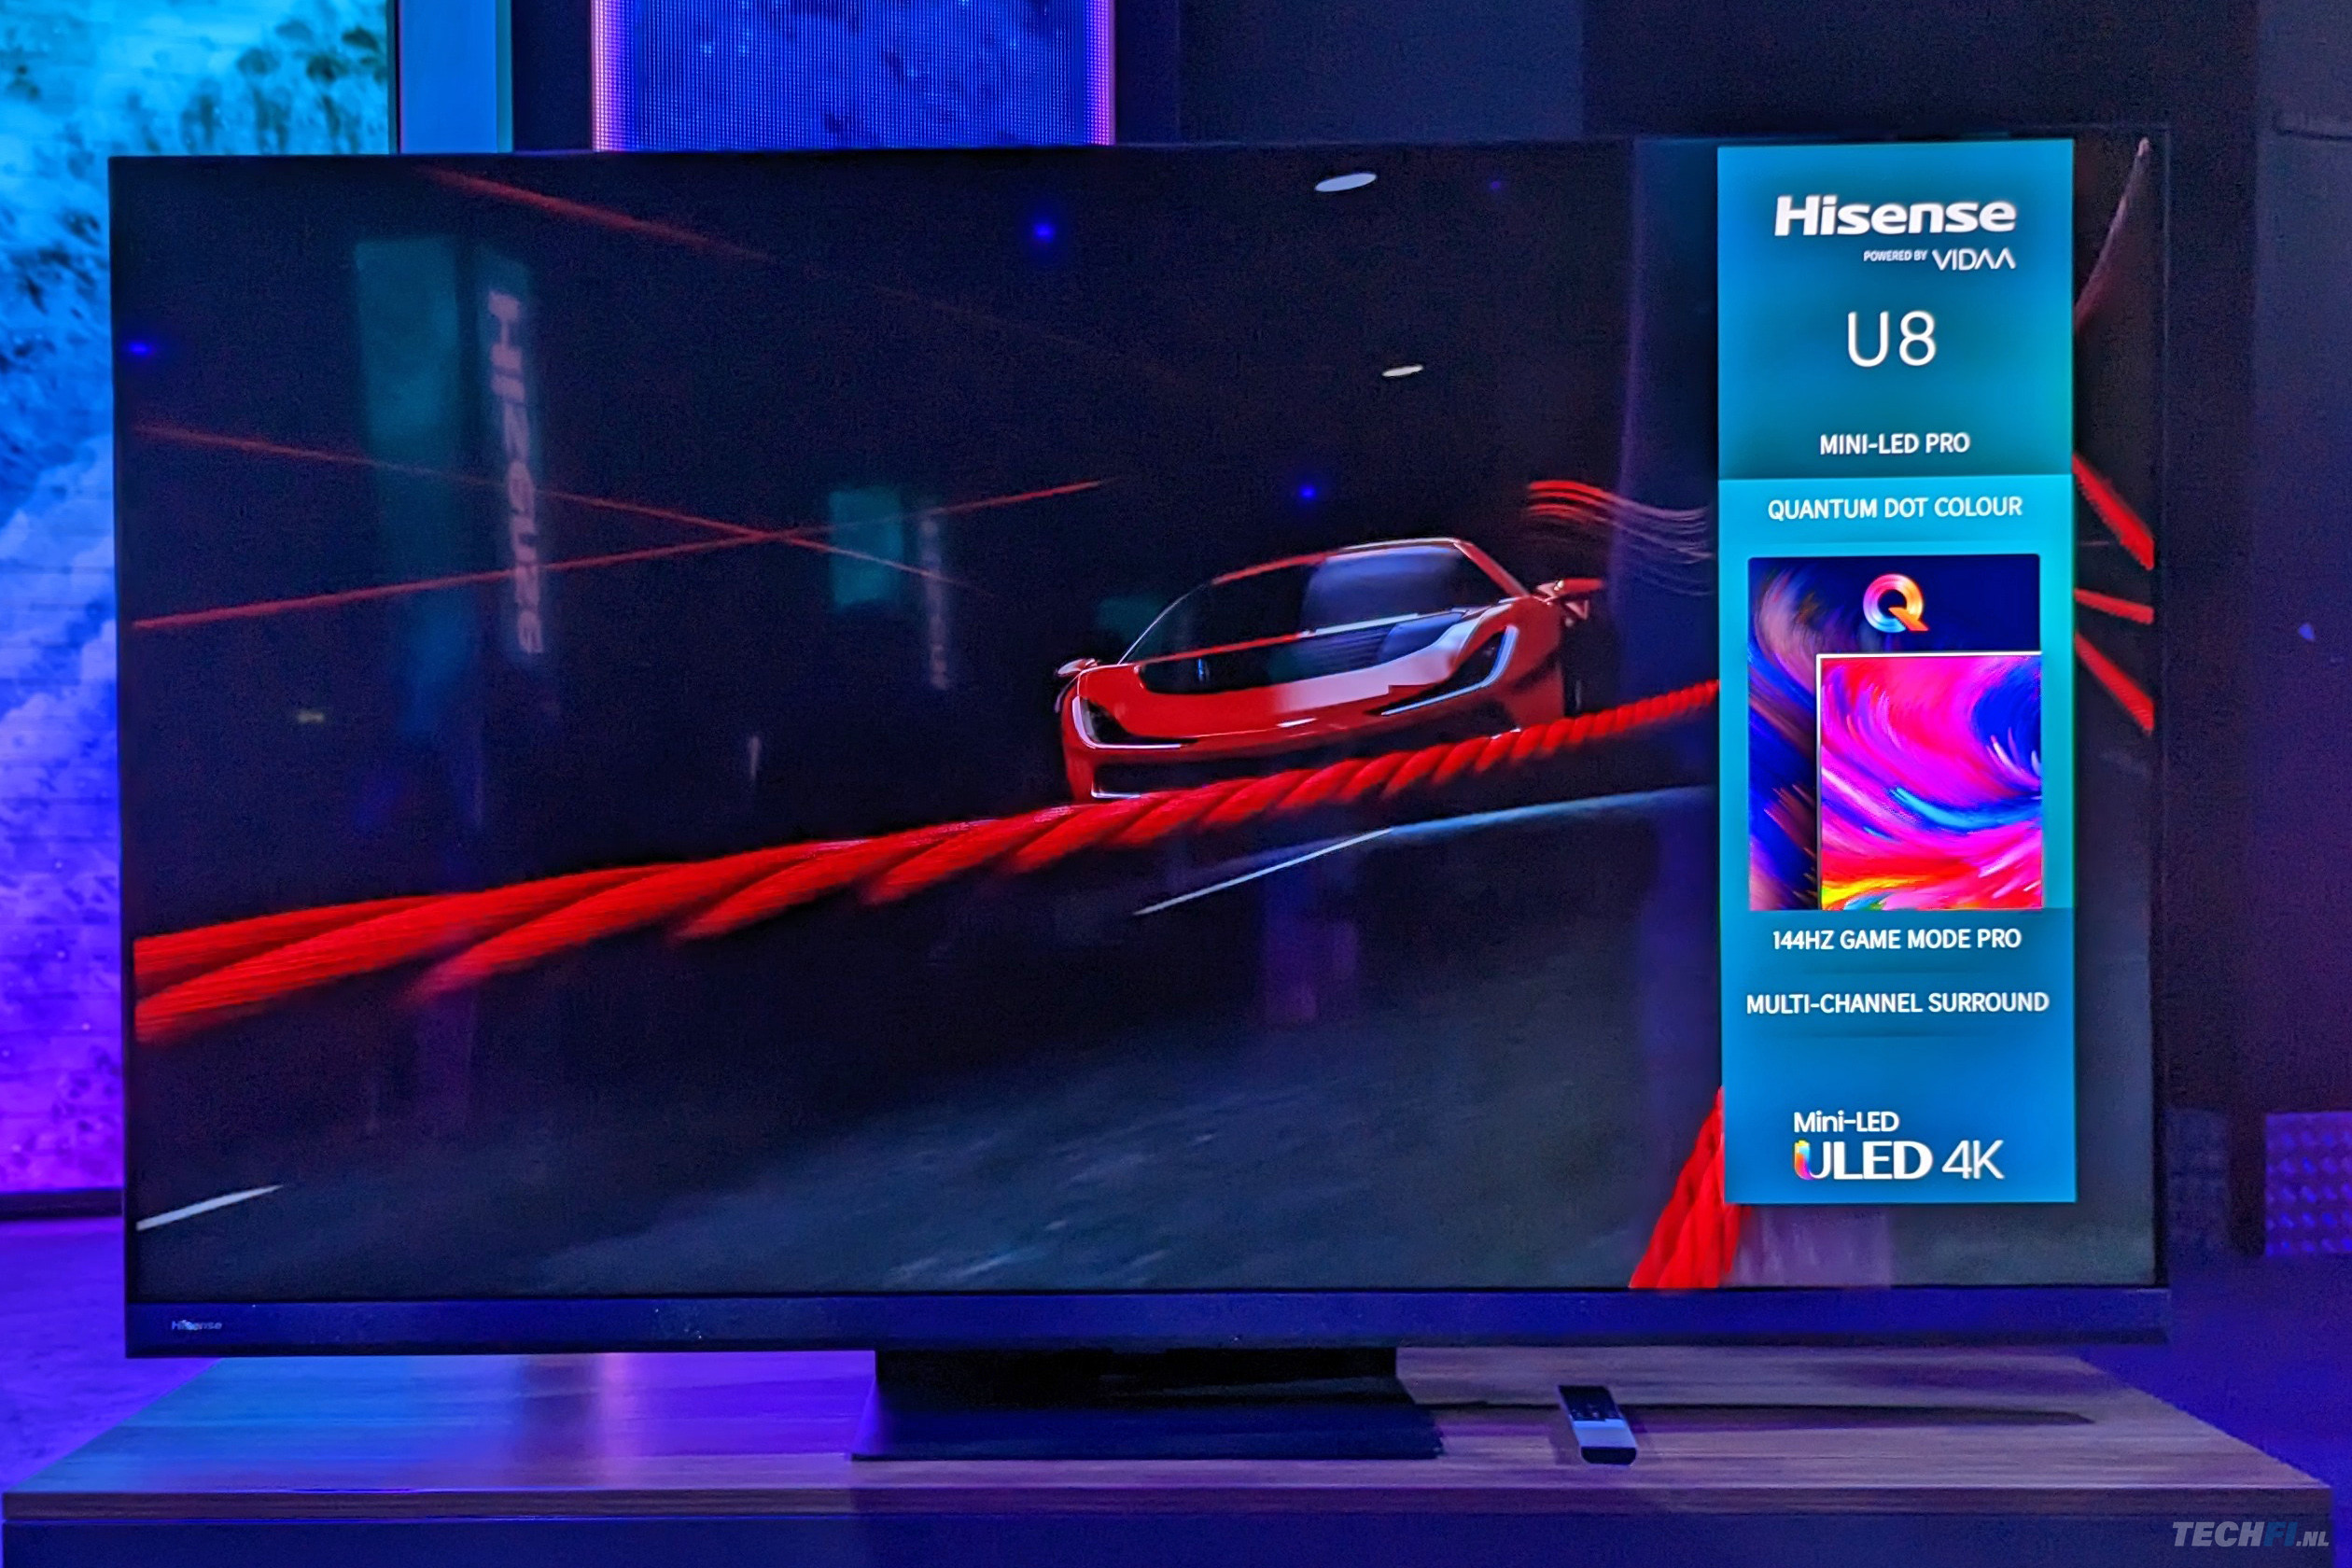 Hisense U8K Mini-LED Google TV review